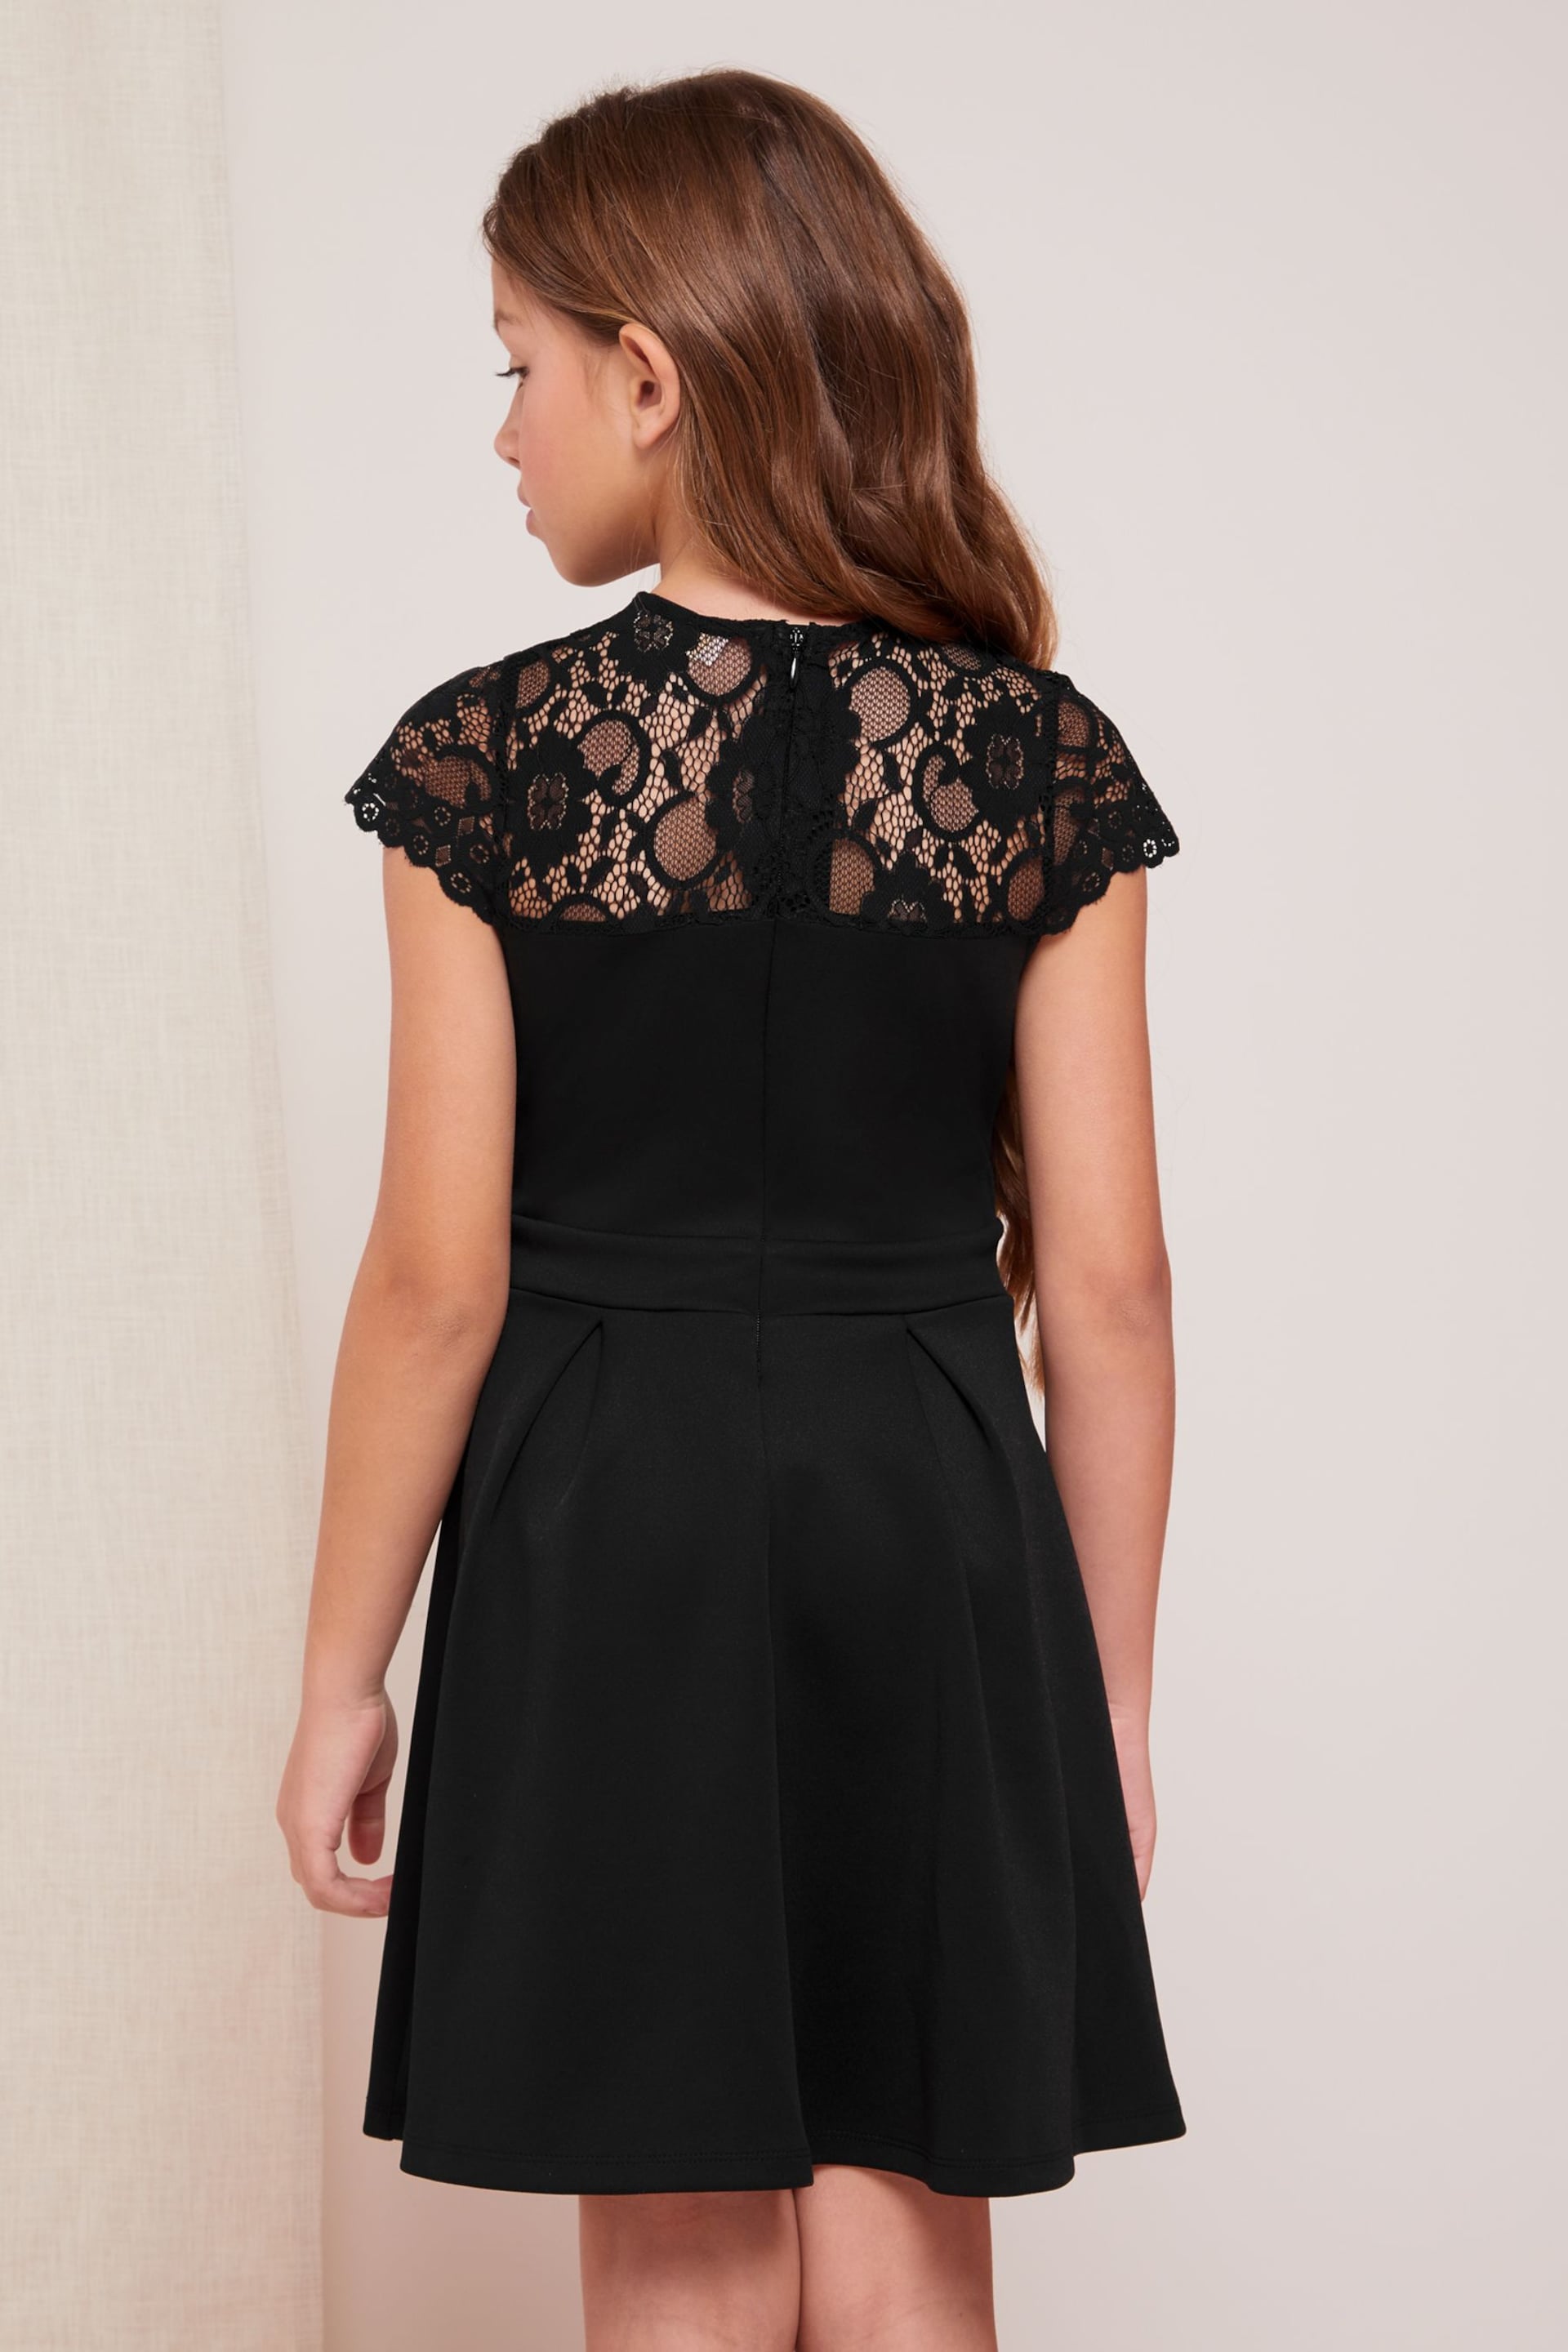 Lipsy Black Lace Yoke Dress - Image 3 of 4